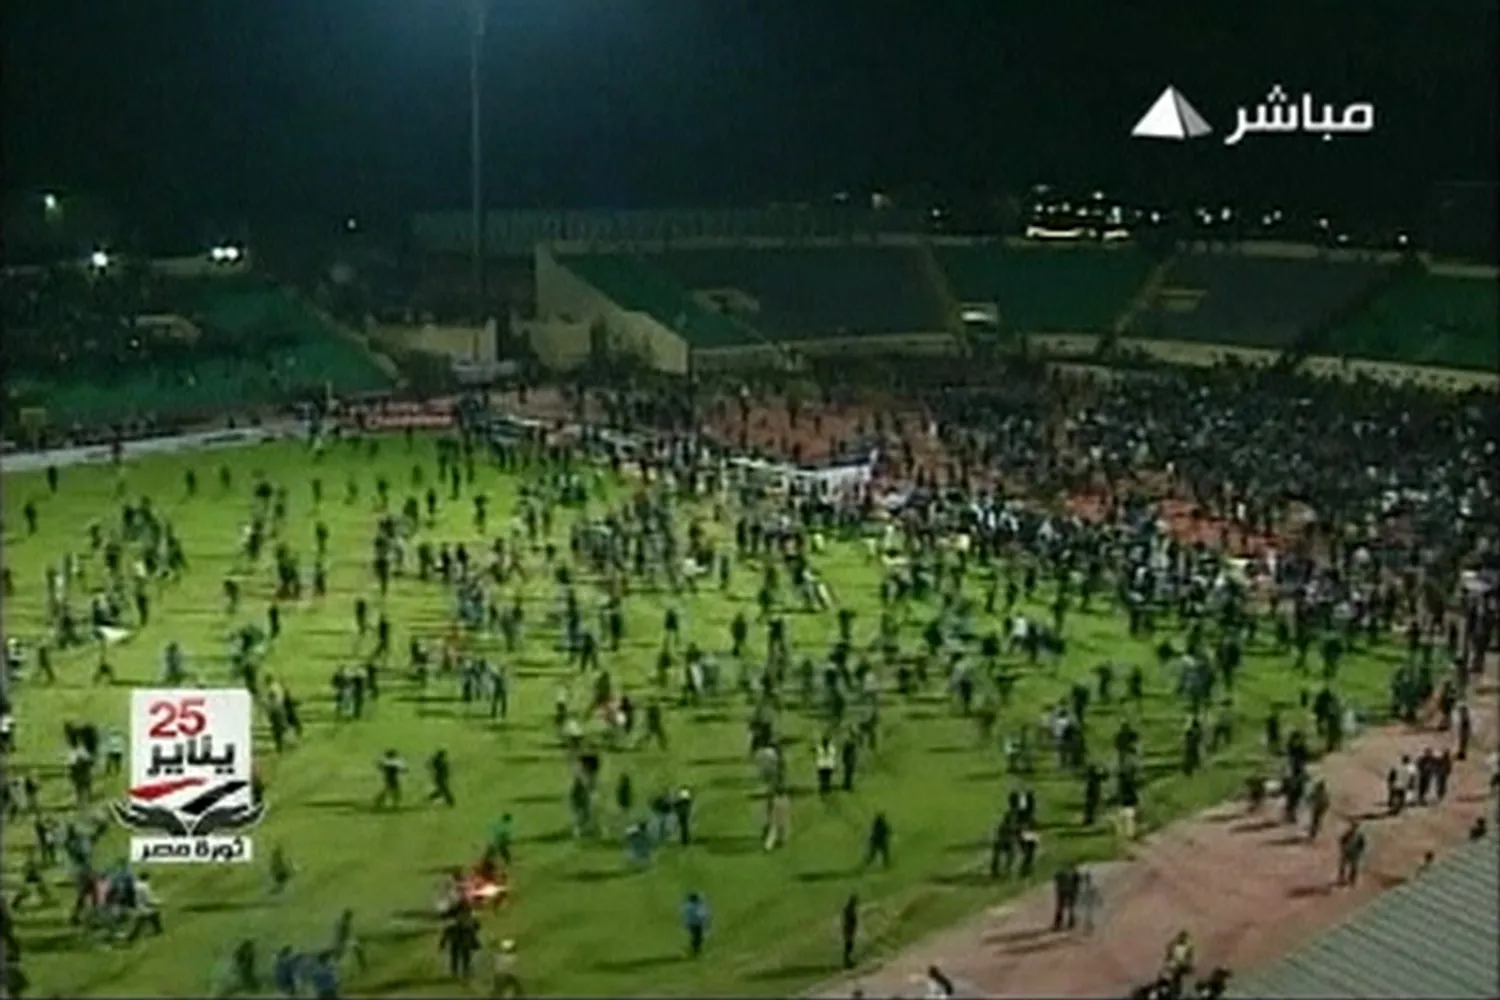 Αίγυπτος | Πρωτοφανής τραγωδία σε ποδοσφαιρικό αγώνα